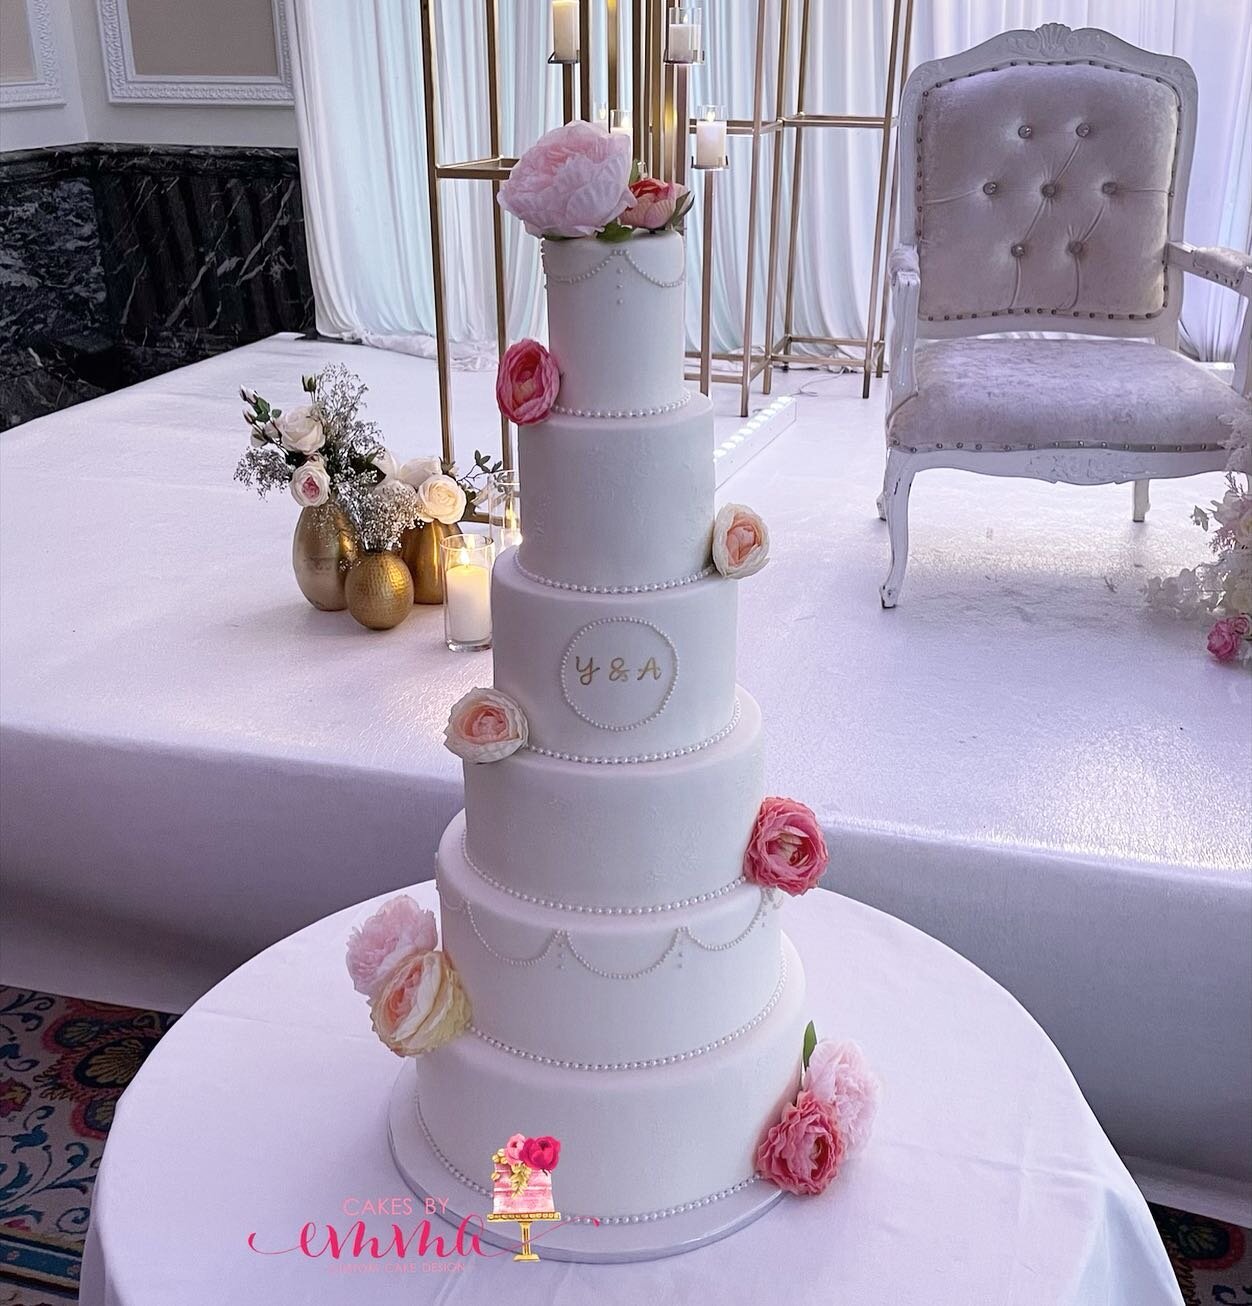 #elegantweddingcakes #weddingcakes #6tieredweddingcake #prestwoodcakes #greatmissendencakes #highwycombecakes #buckscakes